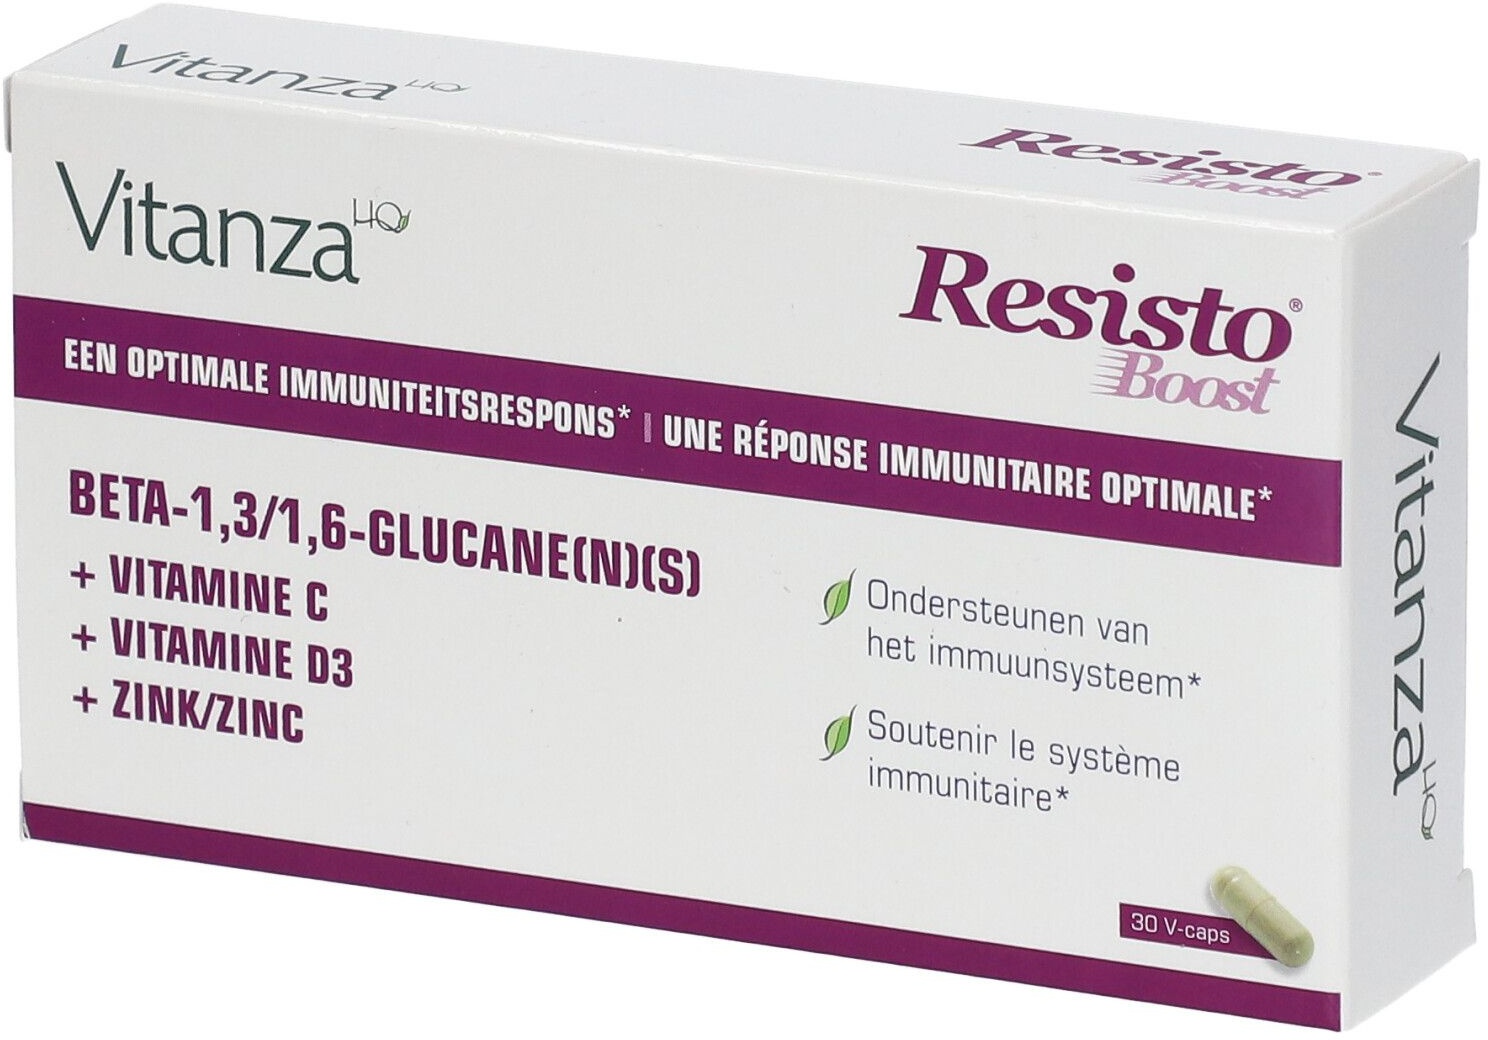 Resisto® Boost Bêta-1,3/1,6 Glucane 30 pc(s) capsule(s)